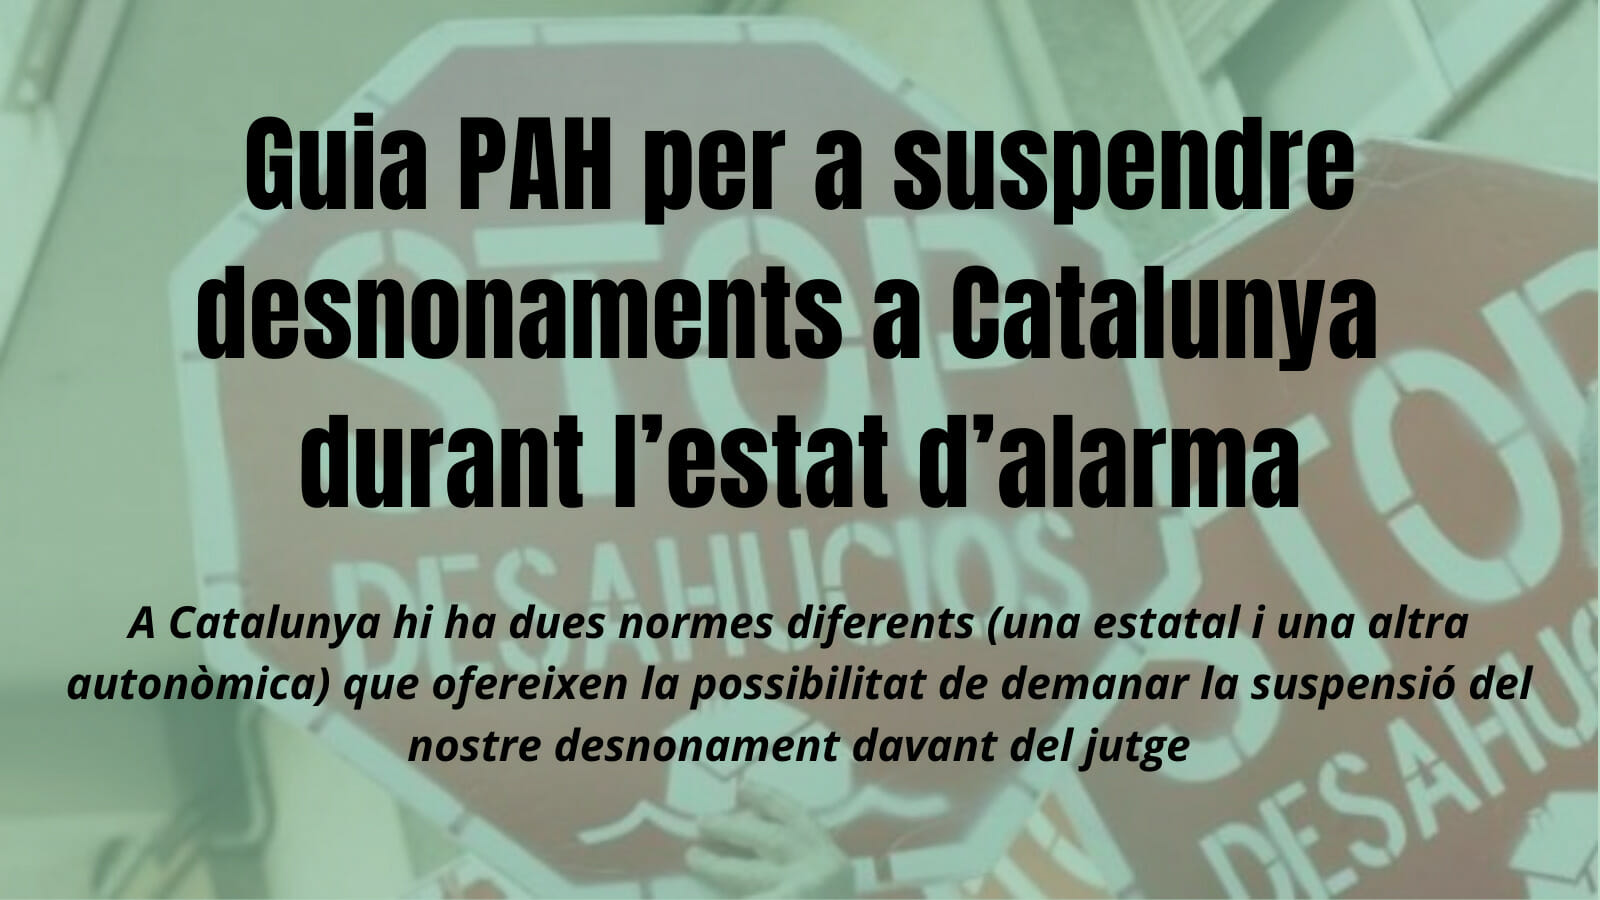 En este momento estás viendo Guia PAH per a suspendre desnonaments a Catalunya durant l’estat d’alarma